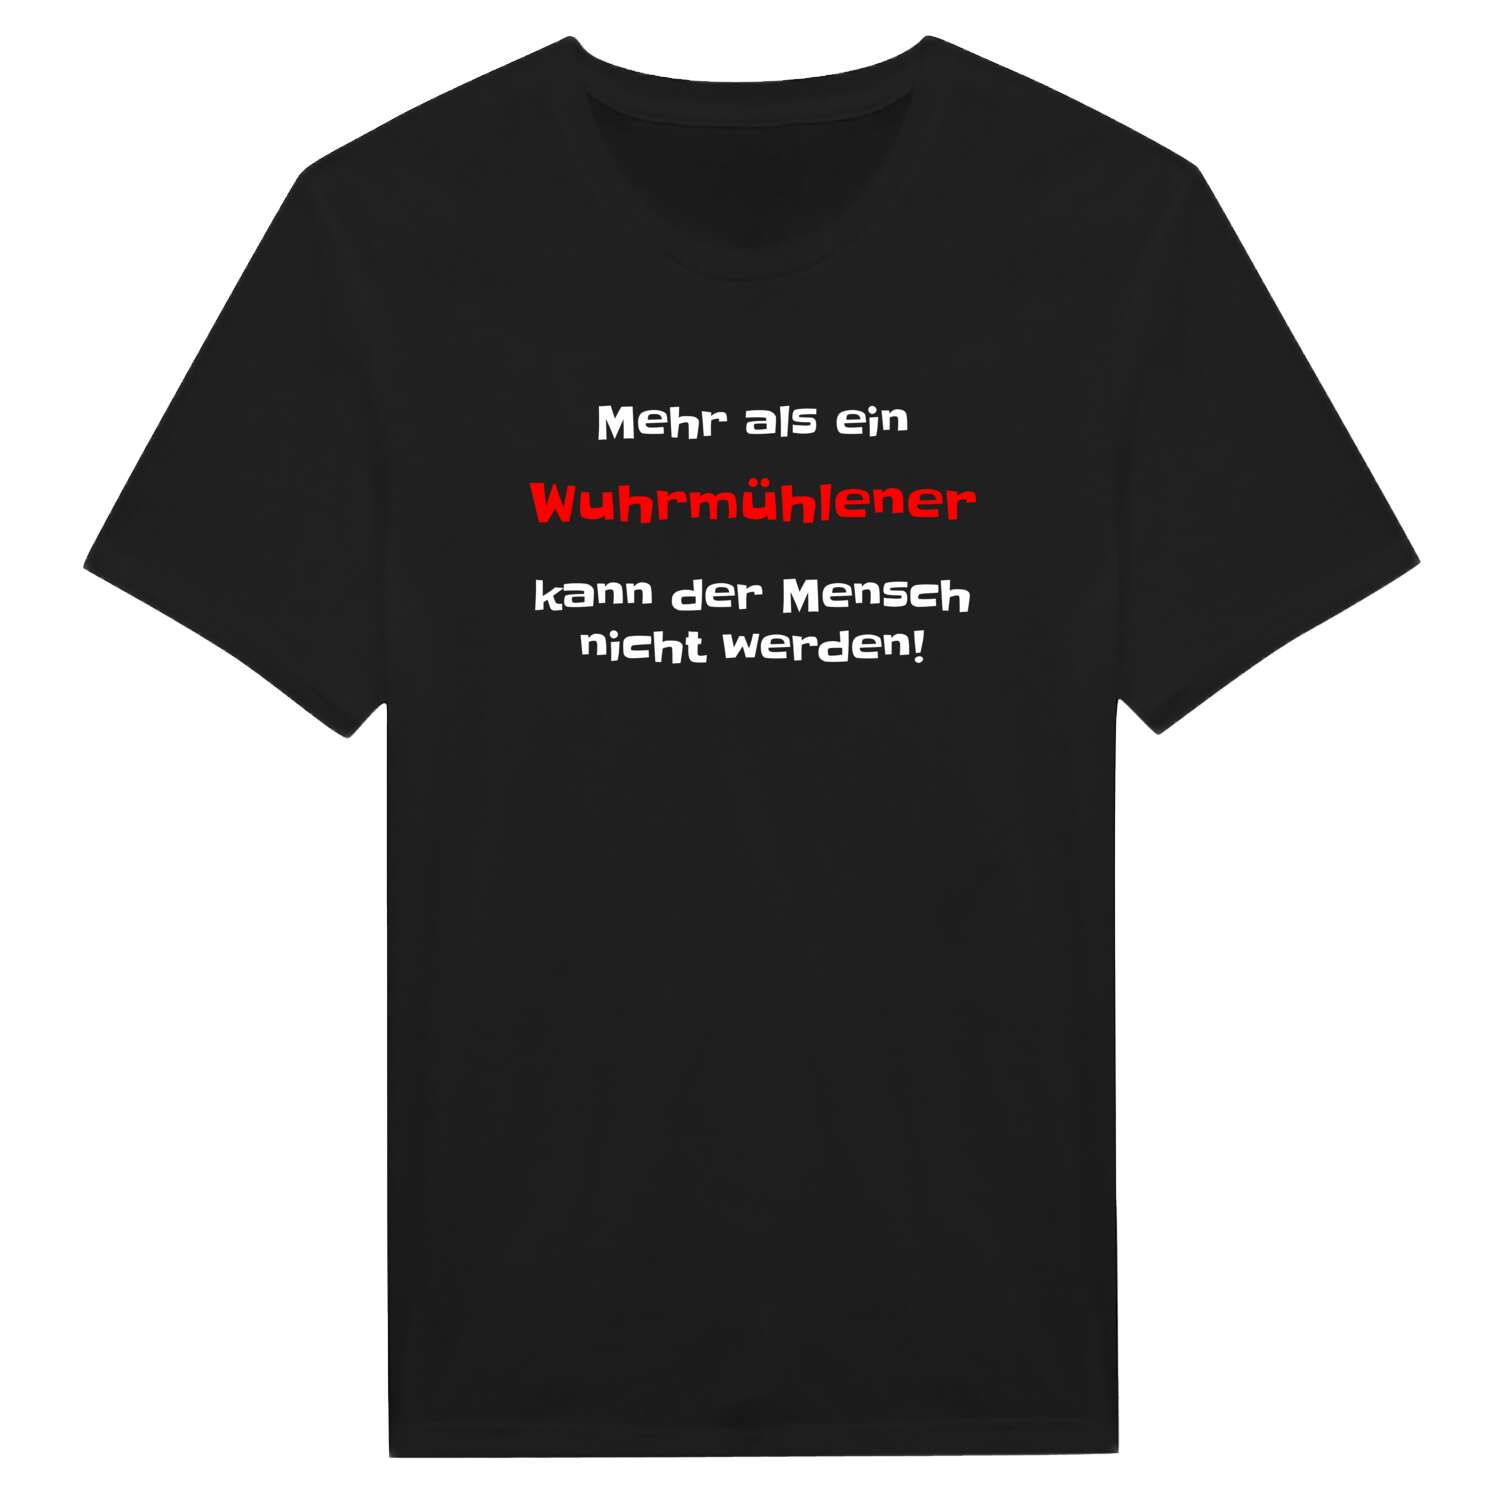 Wuhrmühle T-Shirt »Mehr als ein«